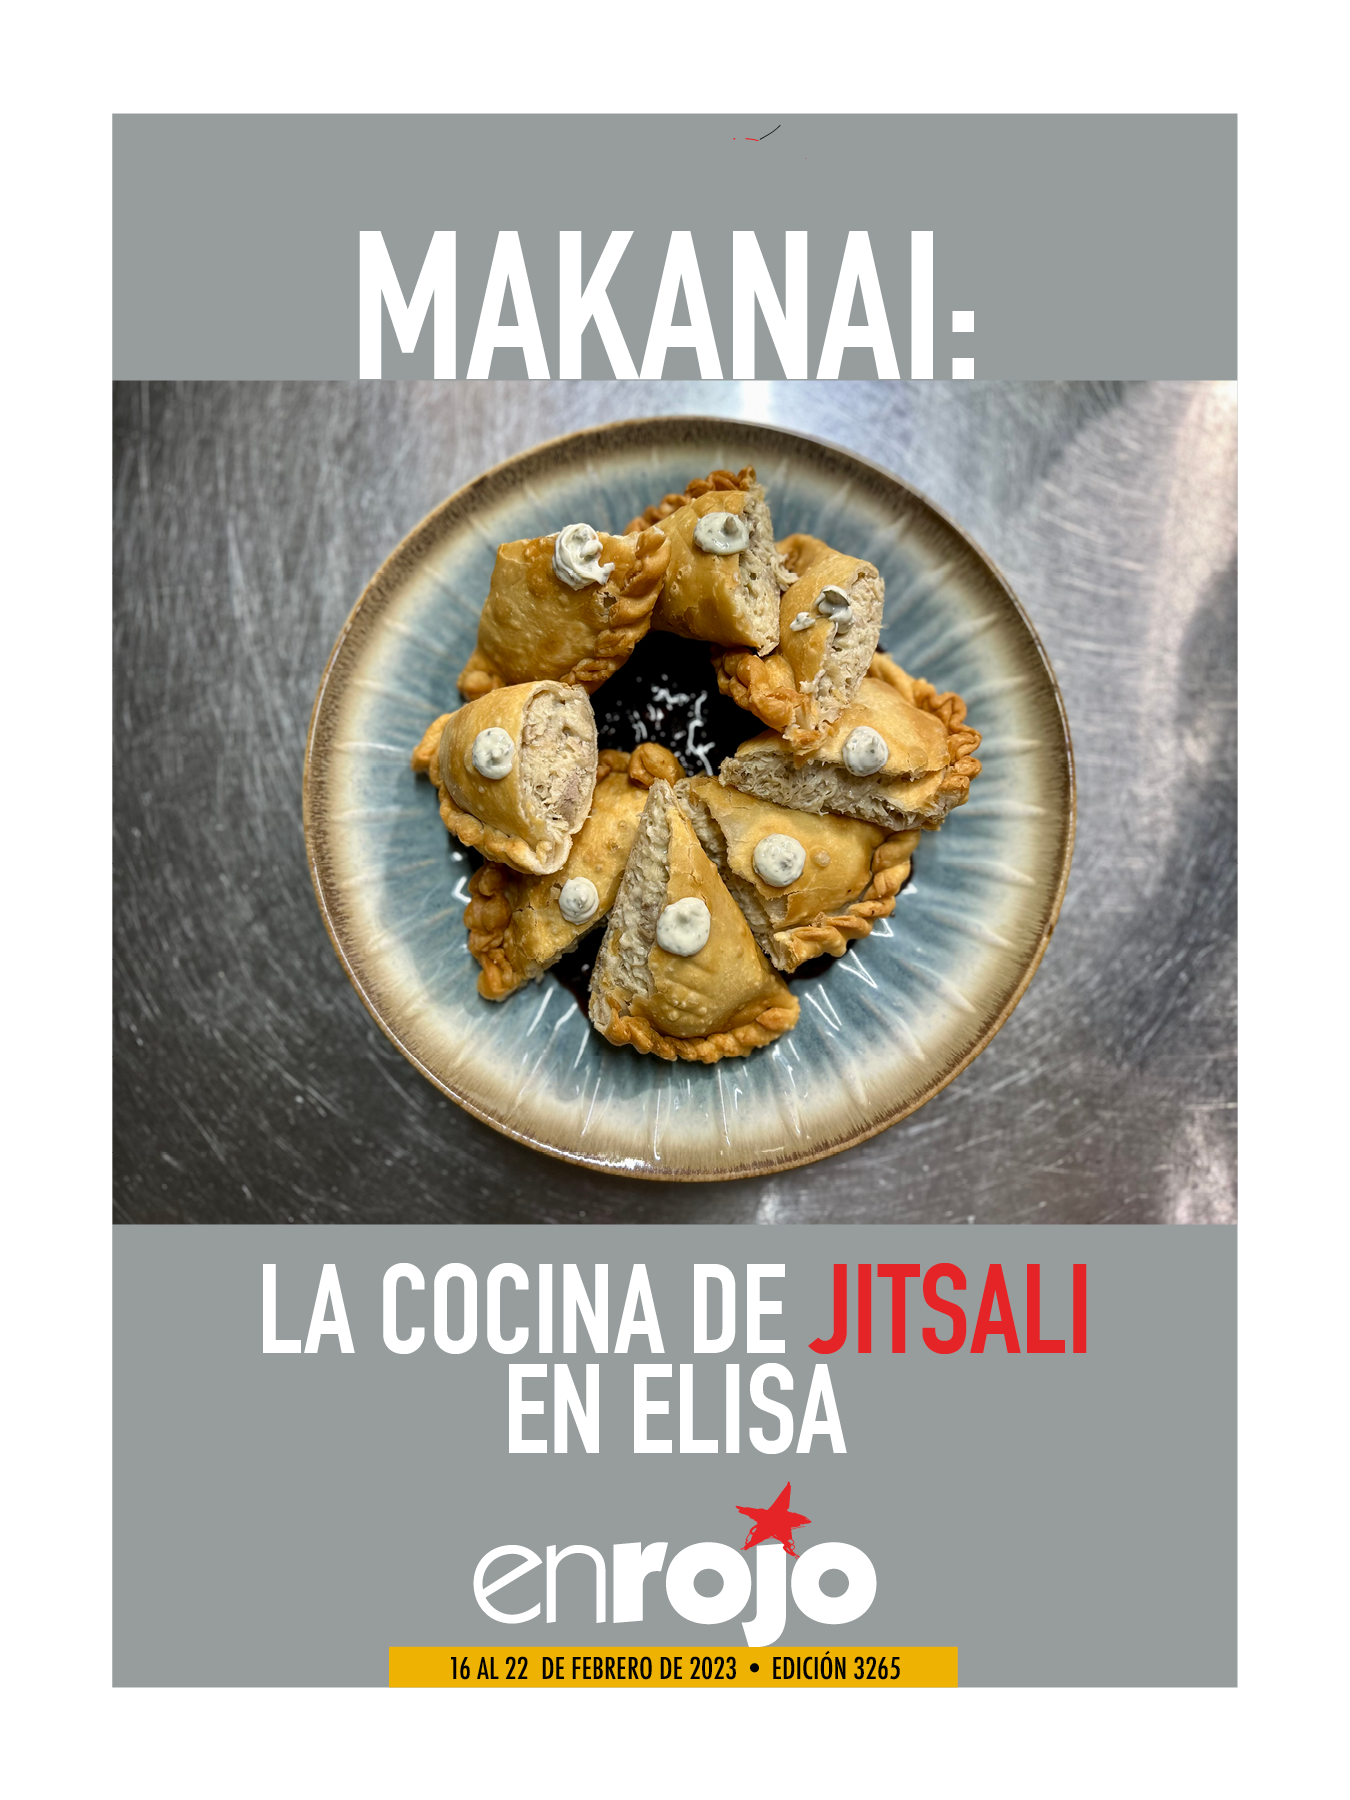 Juegos de cocina sobre restaurantes - EN LA COCINA Magazine